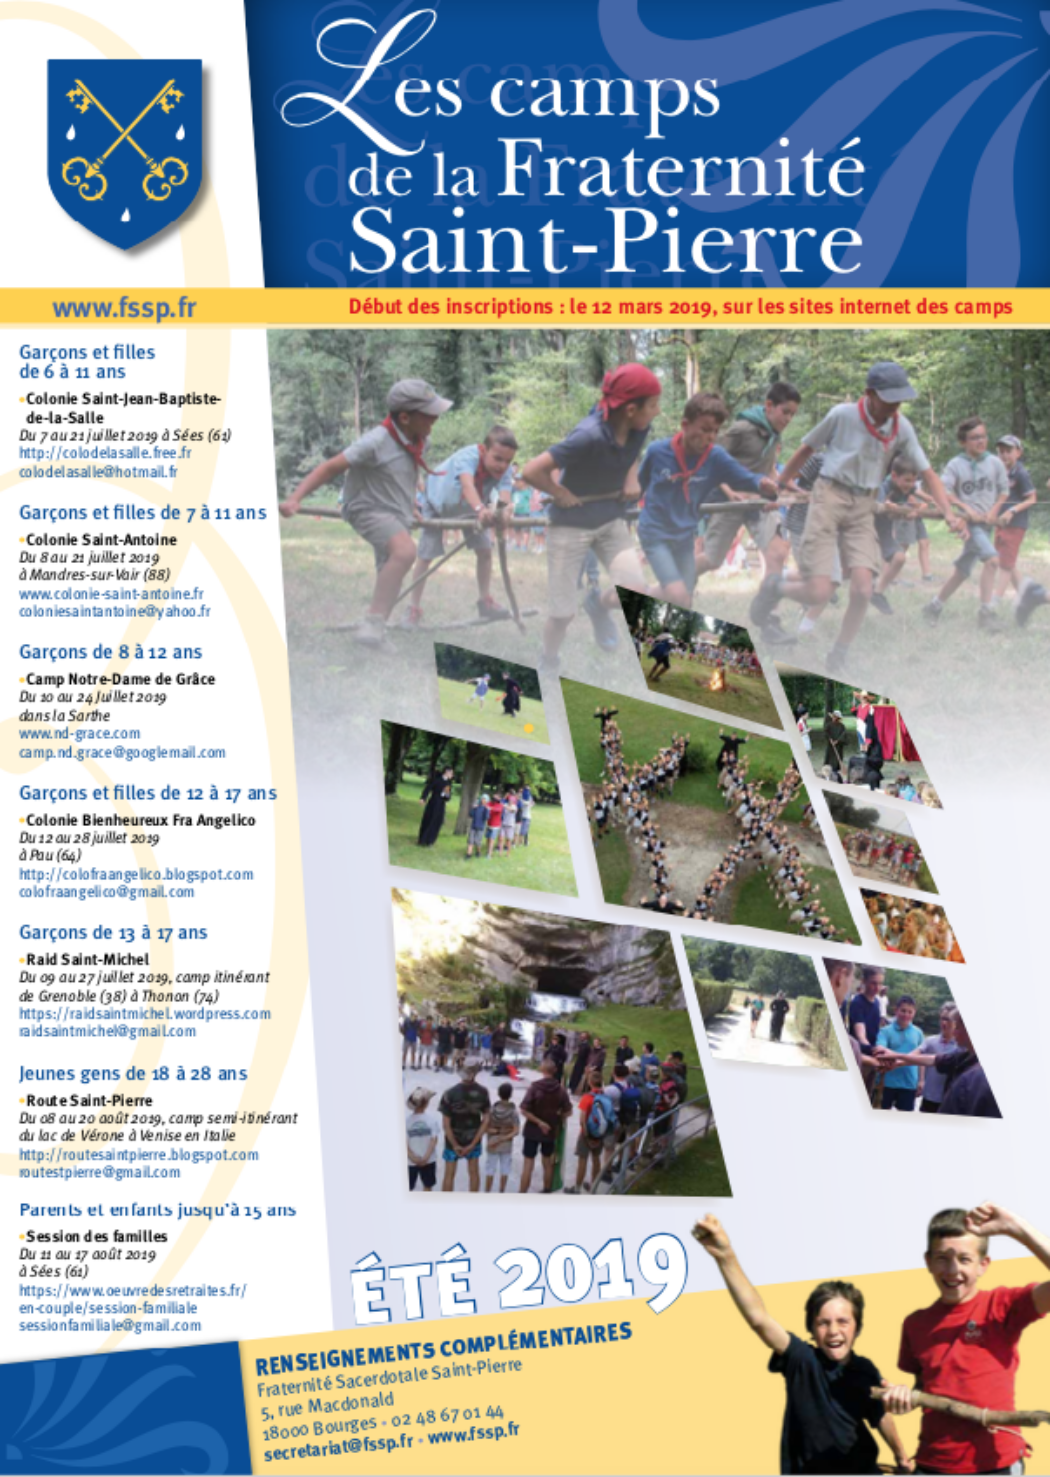 Camps d’été de la Fraternité Saint-Pierre